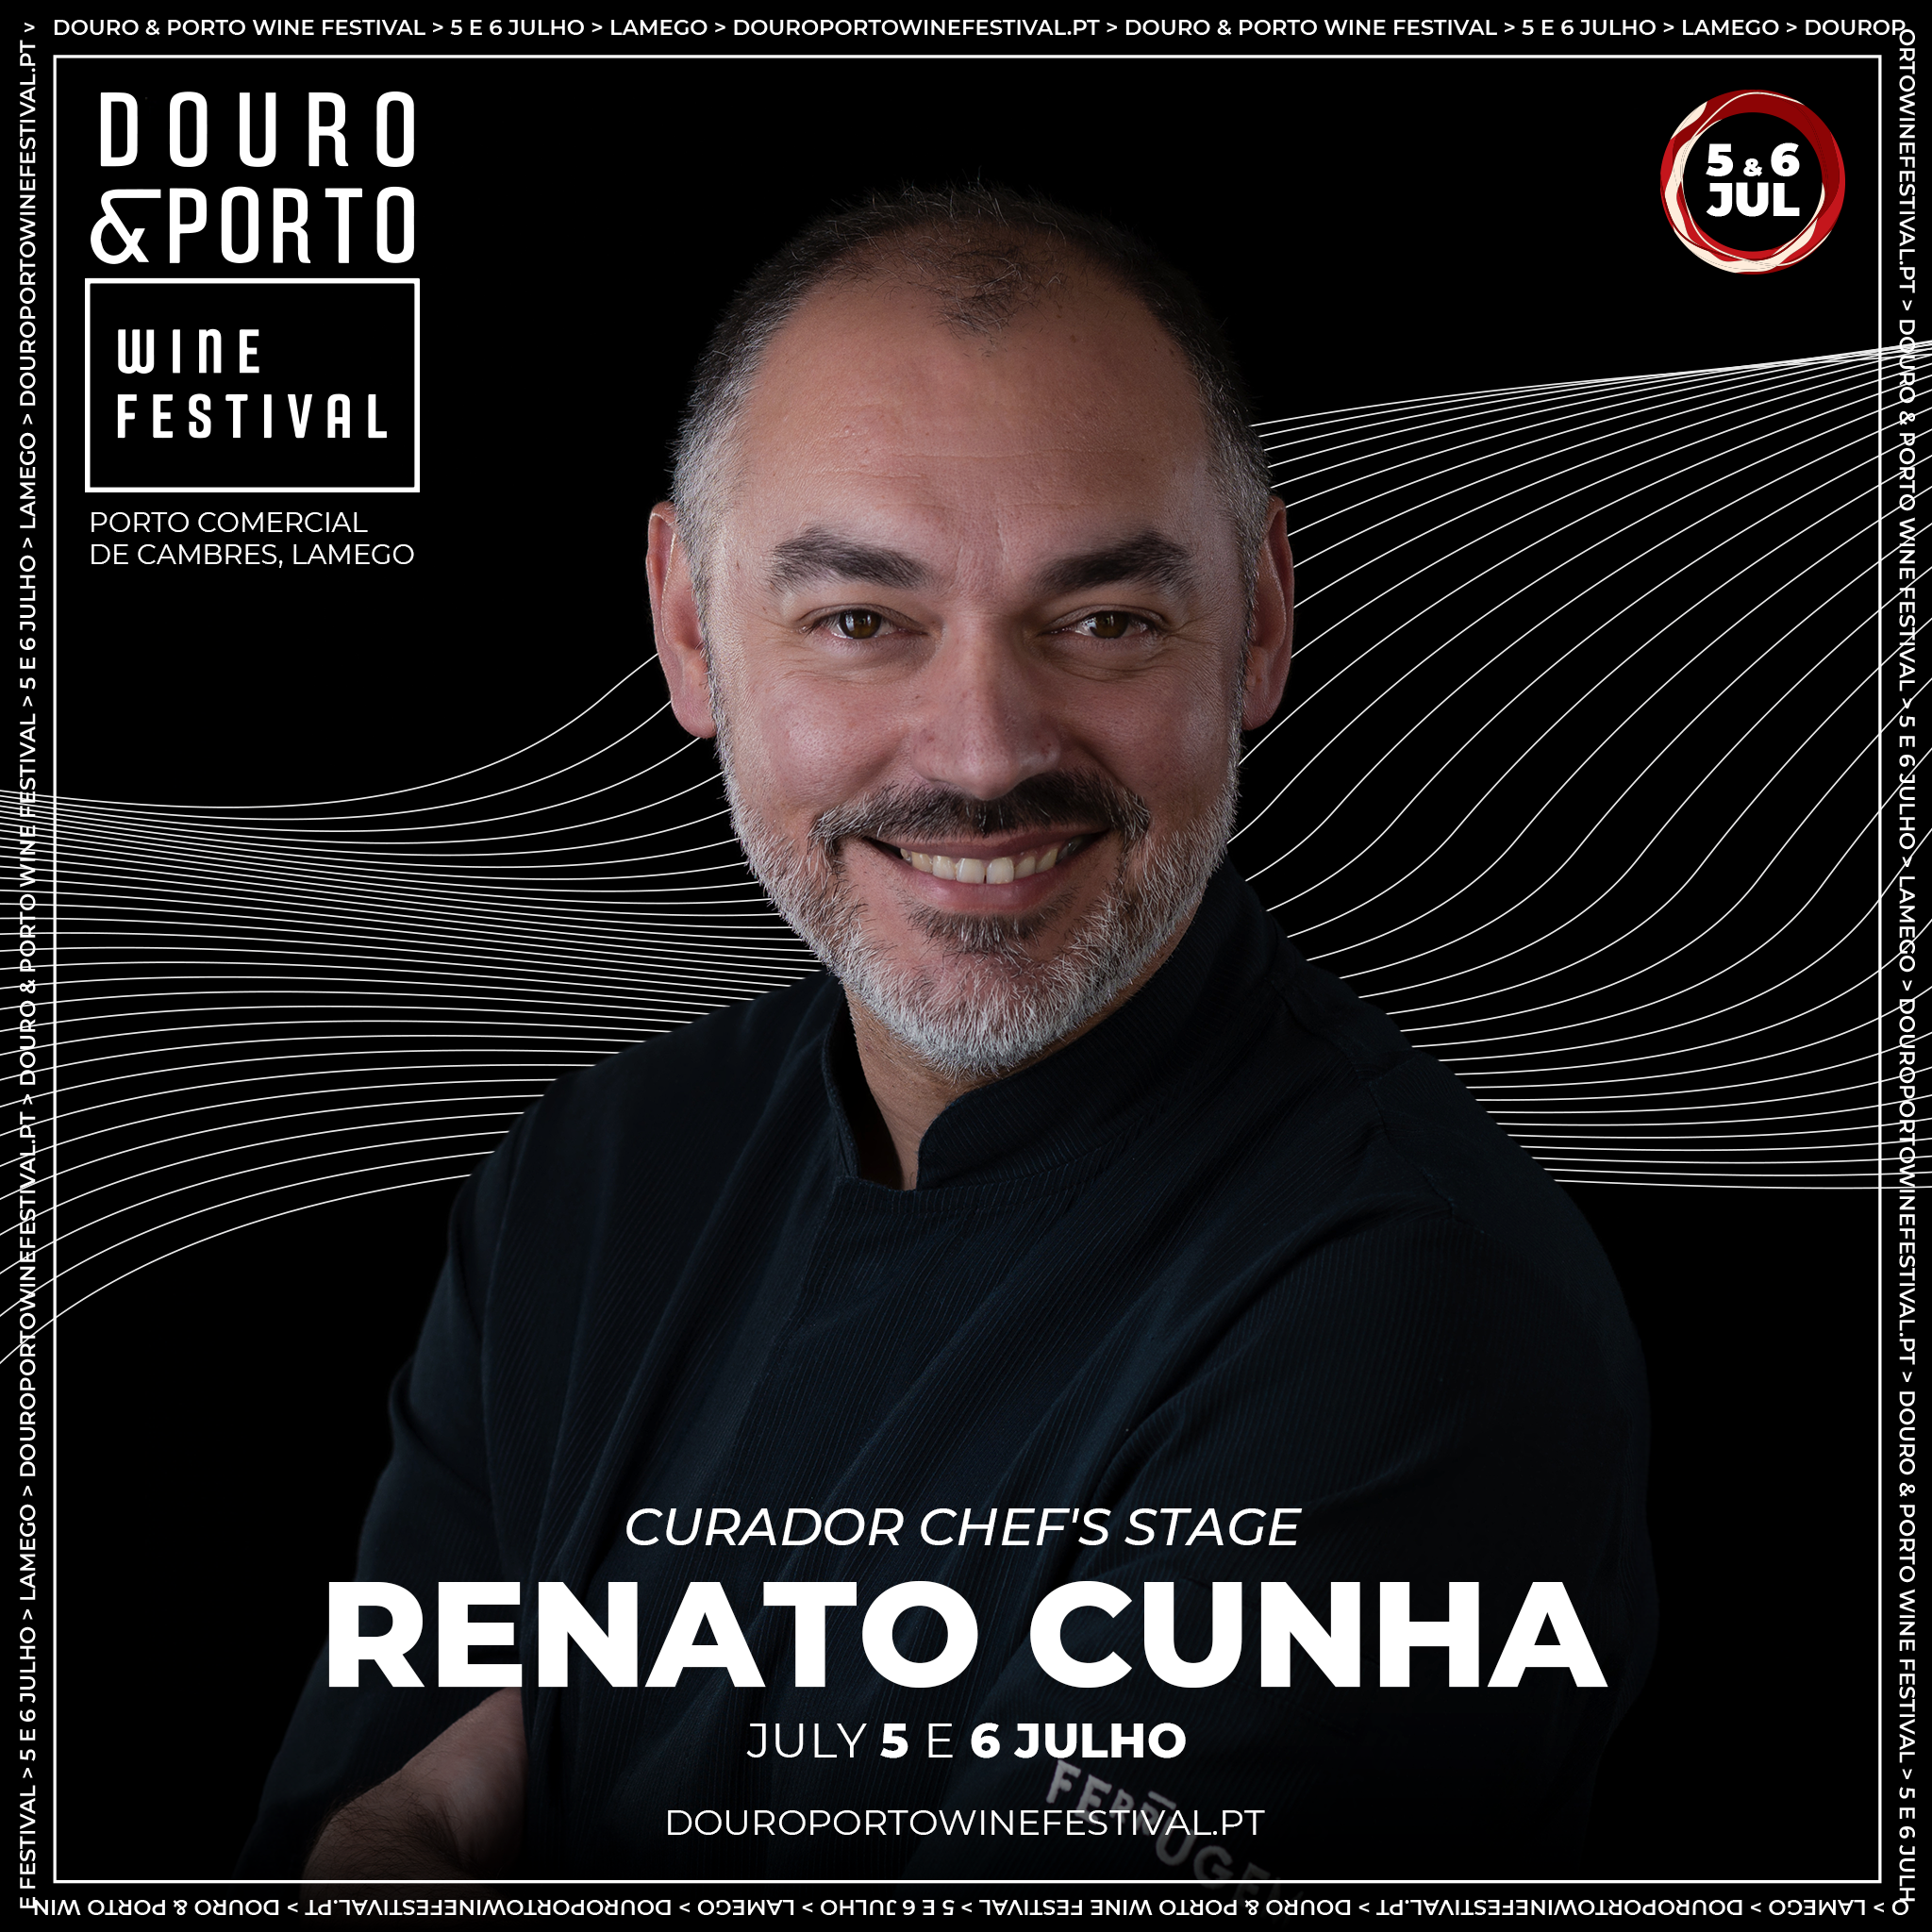 DOURO PORTO WINE FESTIVAL - CHEFF RENATO CUNHA